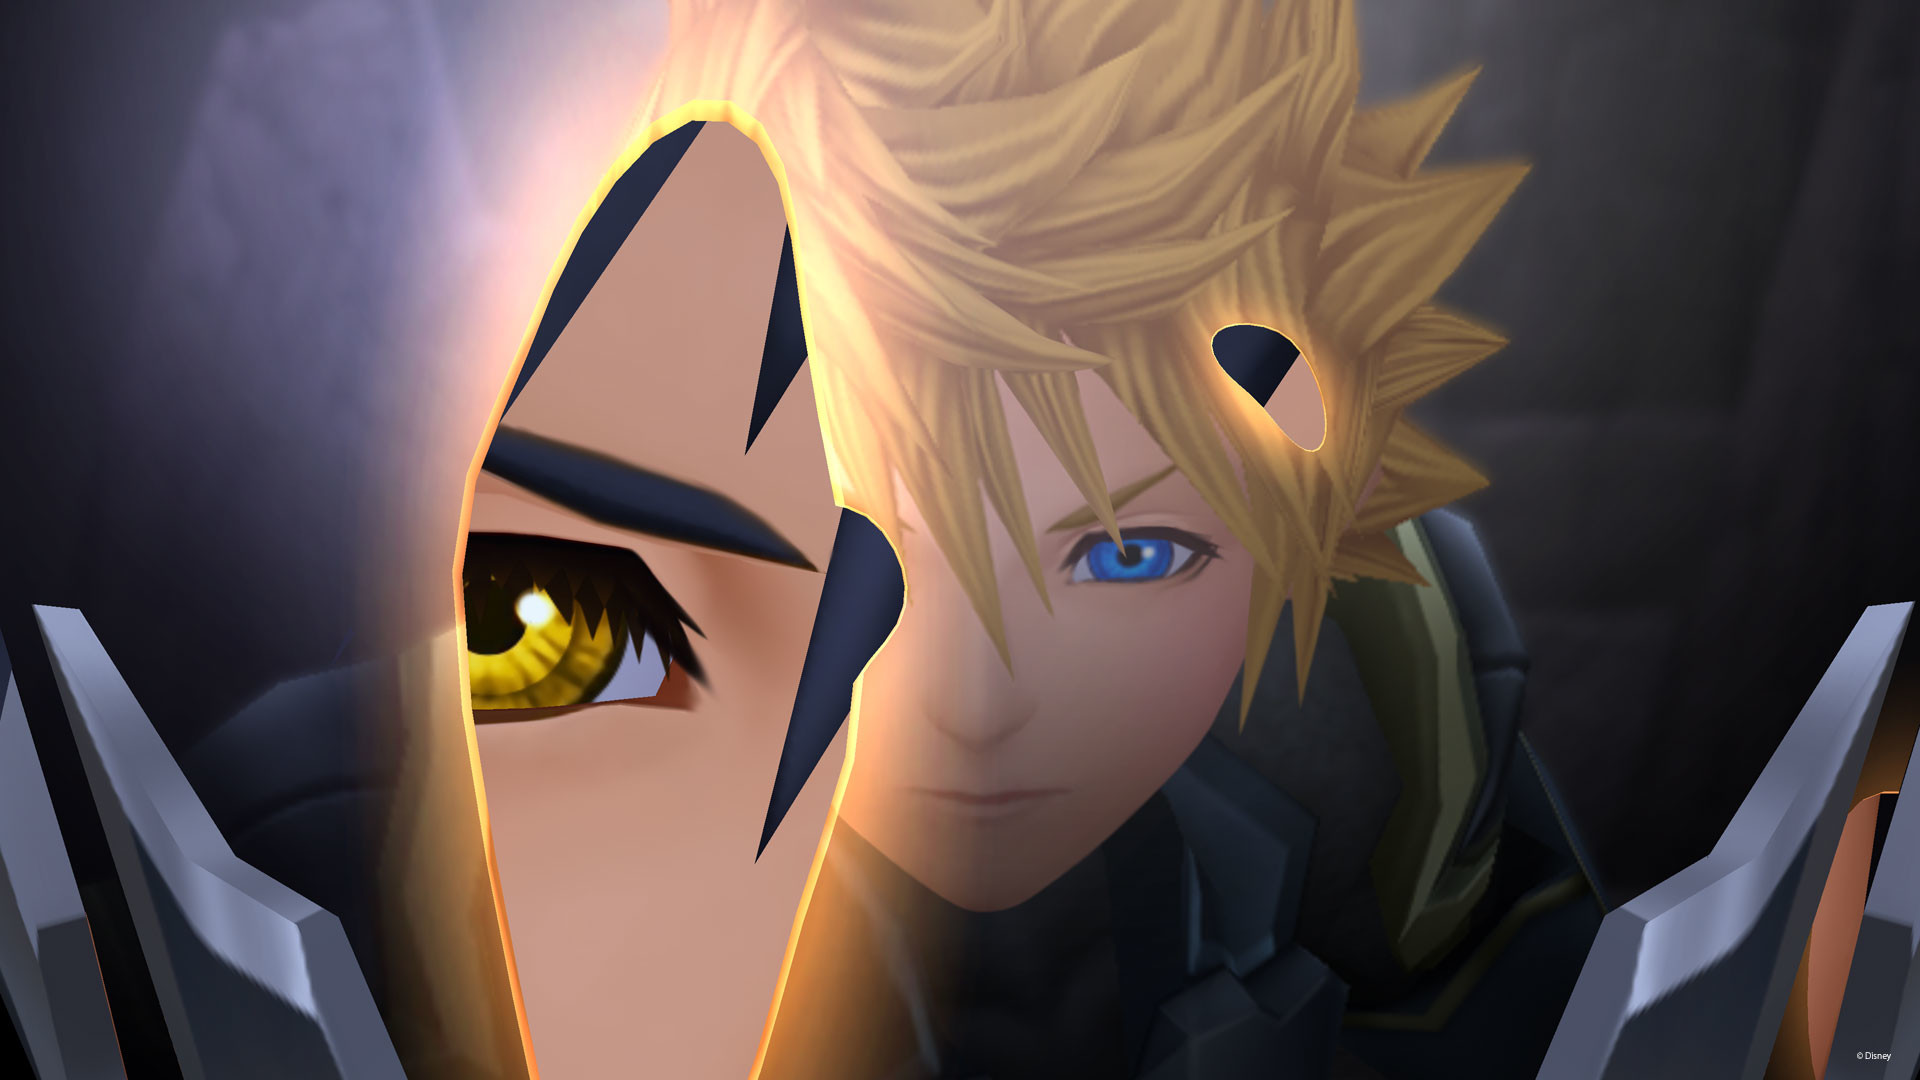 1920x1080 New Screenshots of Kingdom Hearts HD 2.5 ReMIX! - News - Kingdom Hearts  Insider